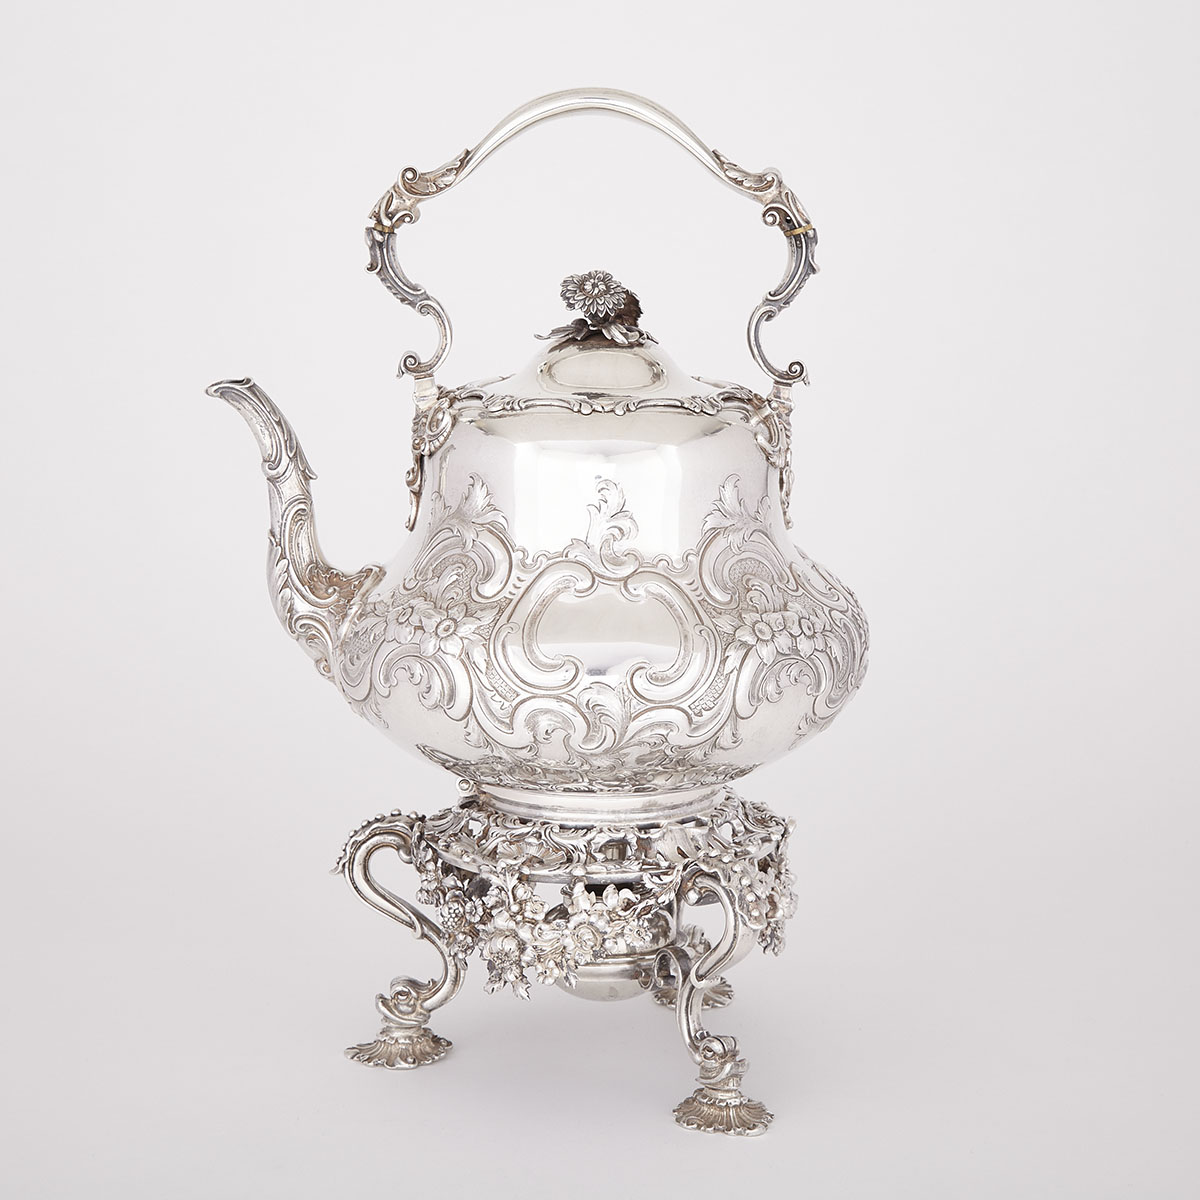 Victorian Silver Tea Kettle on Lampstand, John S. Hunt, London, 1850